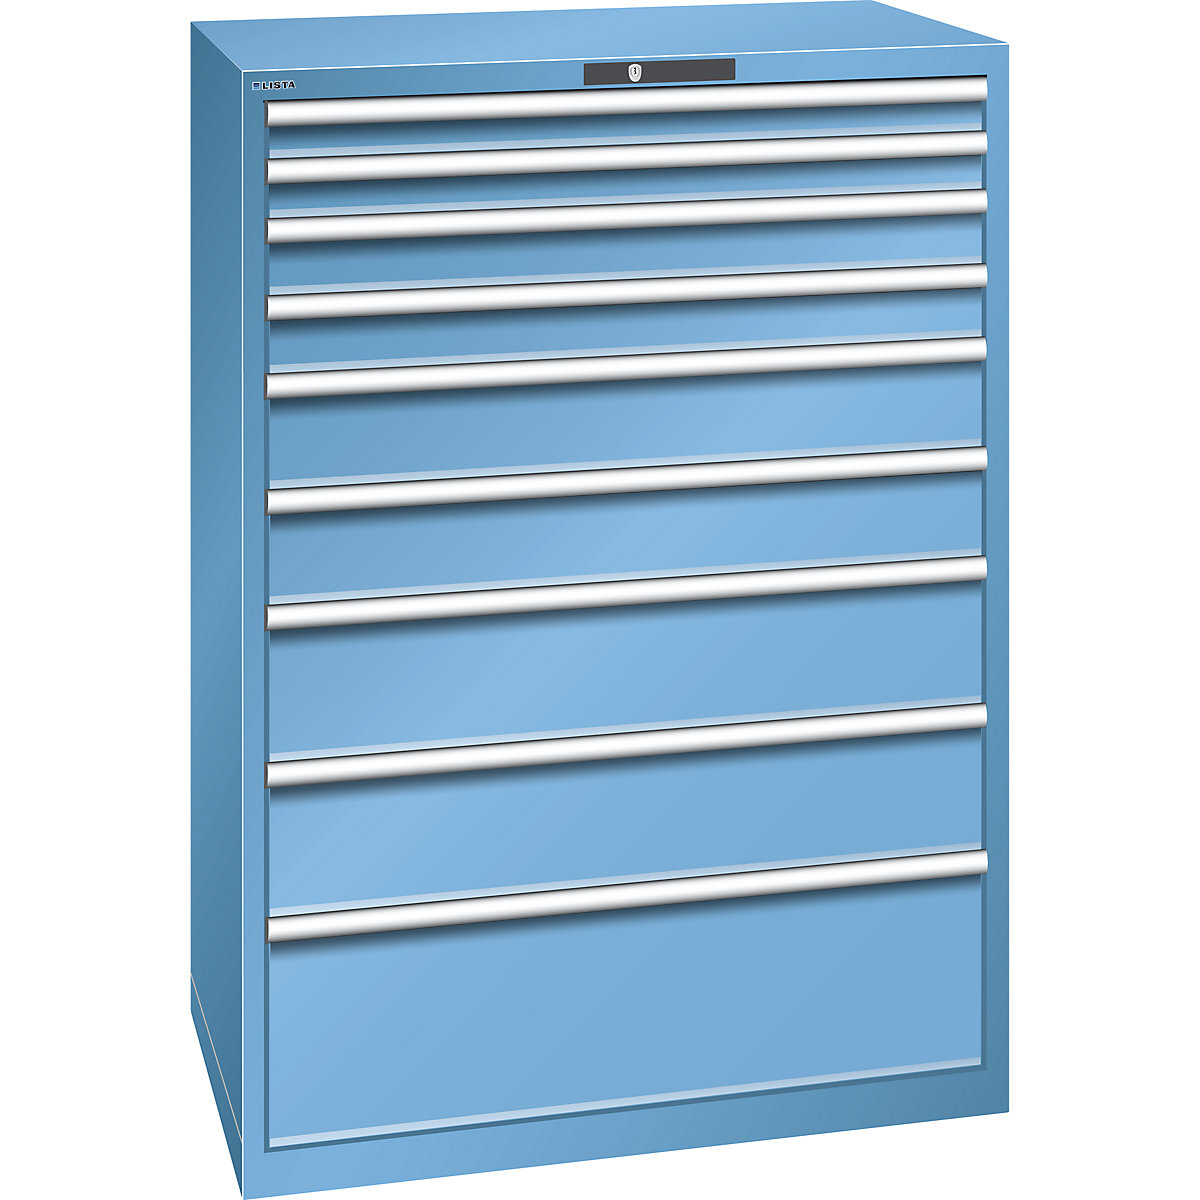 LISTA – Armoire à tiroirs en tôle d'acier, h x l 1450 x 1023 mm, 9 tiroirs, charge max. 200 kg, bleu clair